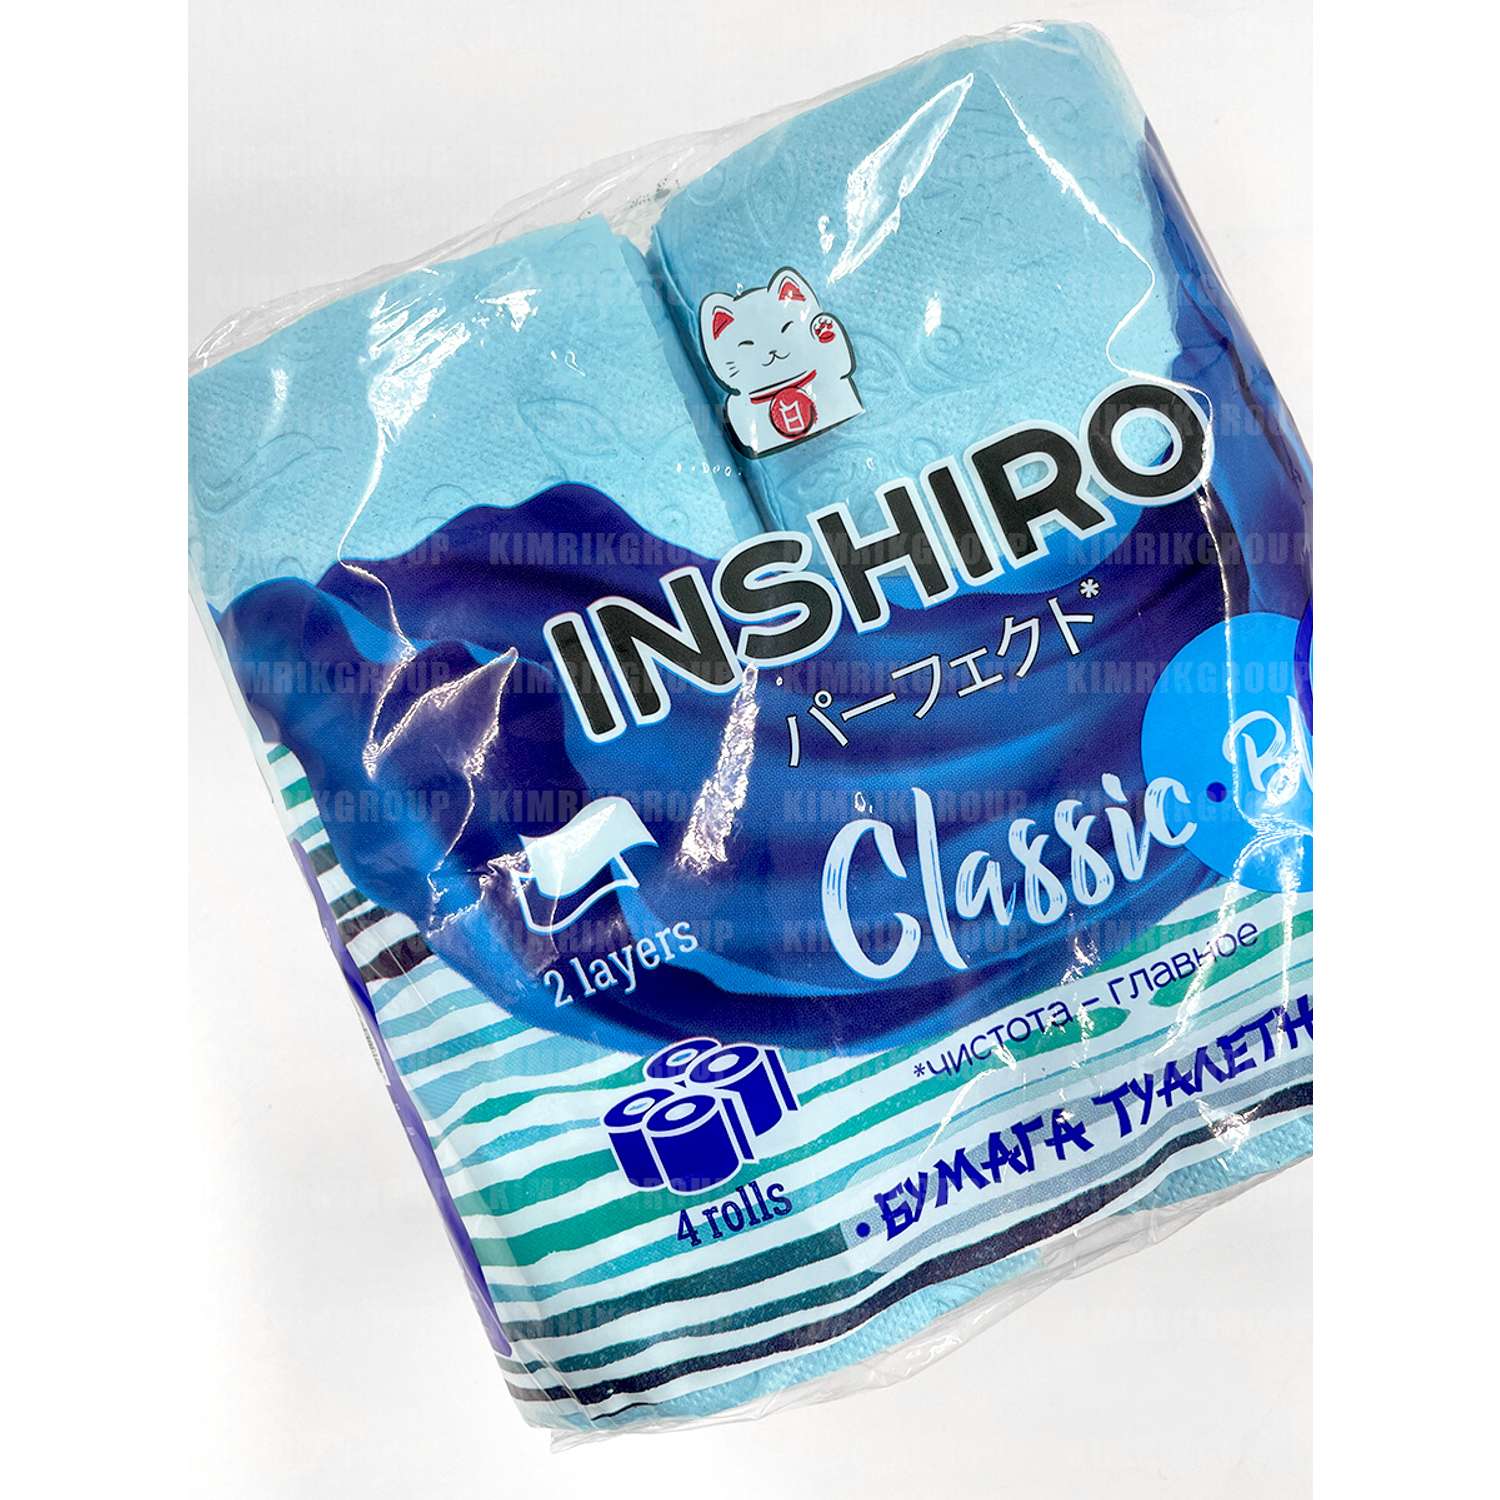 Туалетная бумага Inshiro Цветная Classic Blue 2 слоя 4 рулона - фото 3